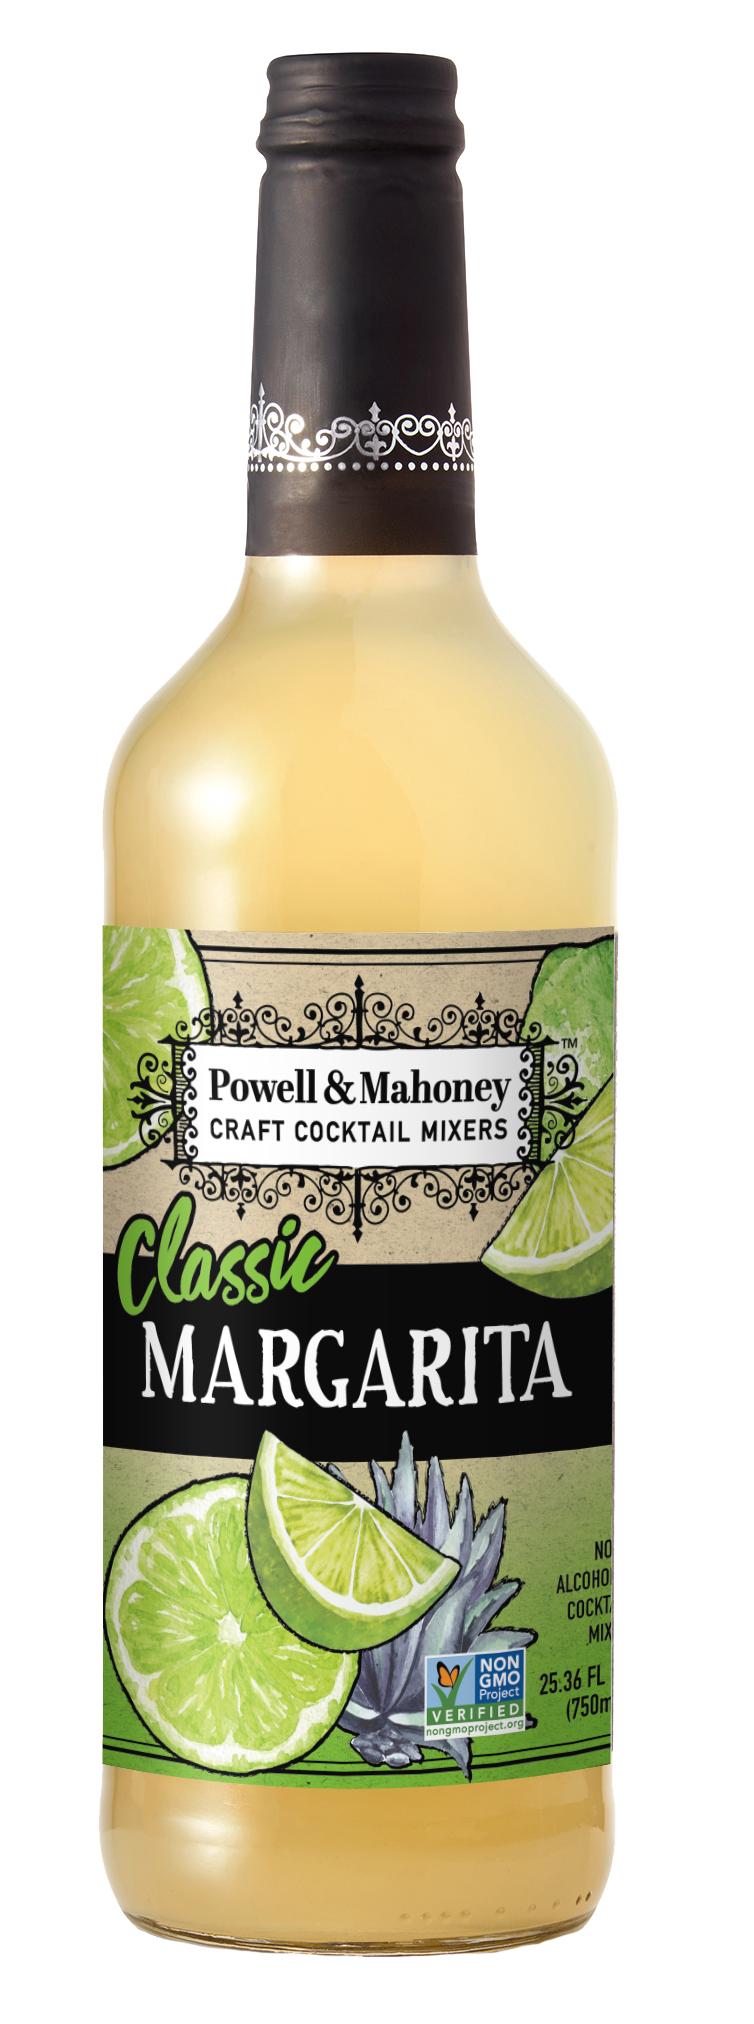 Powell & Mahoney Classic Margarita Mixer - 750mL Bottle